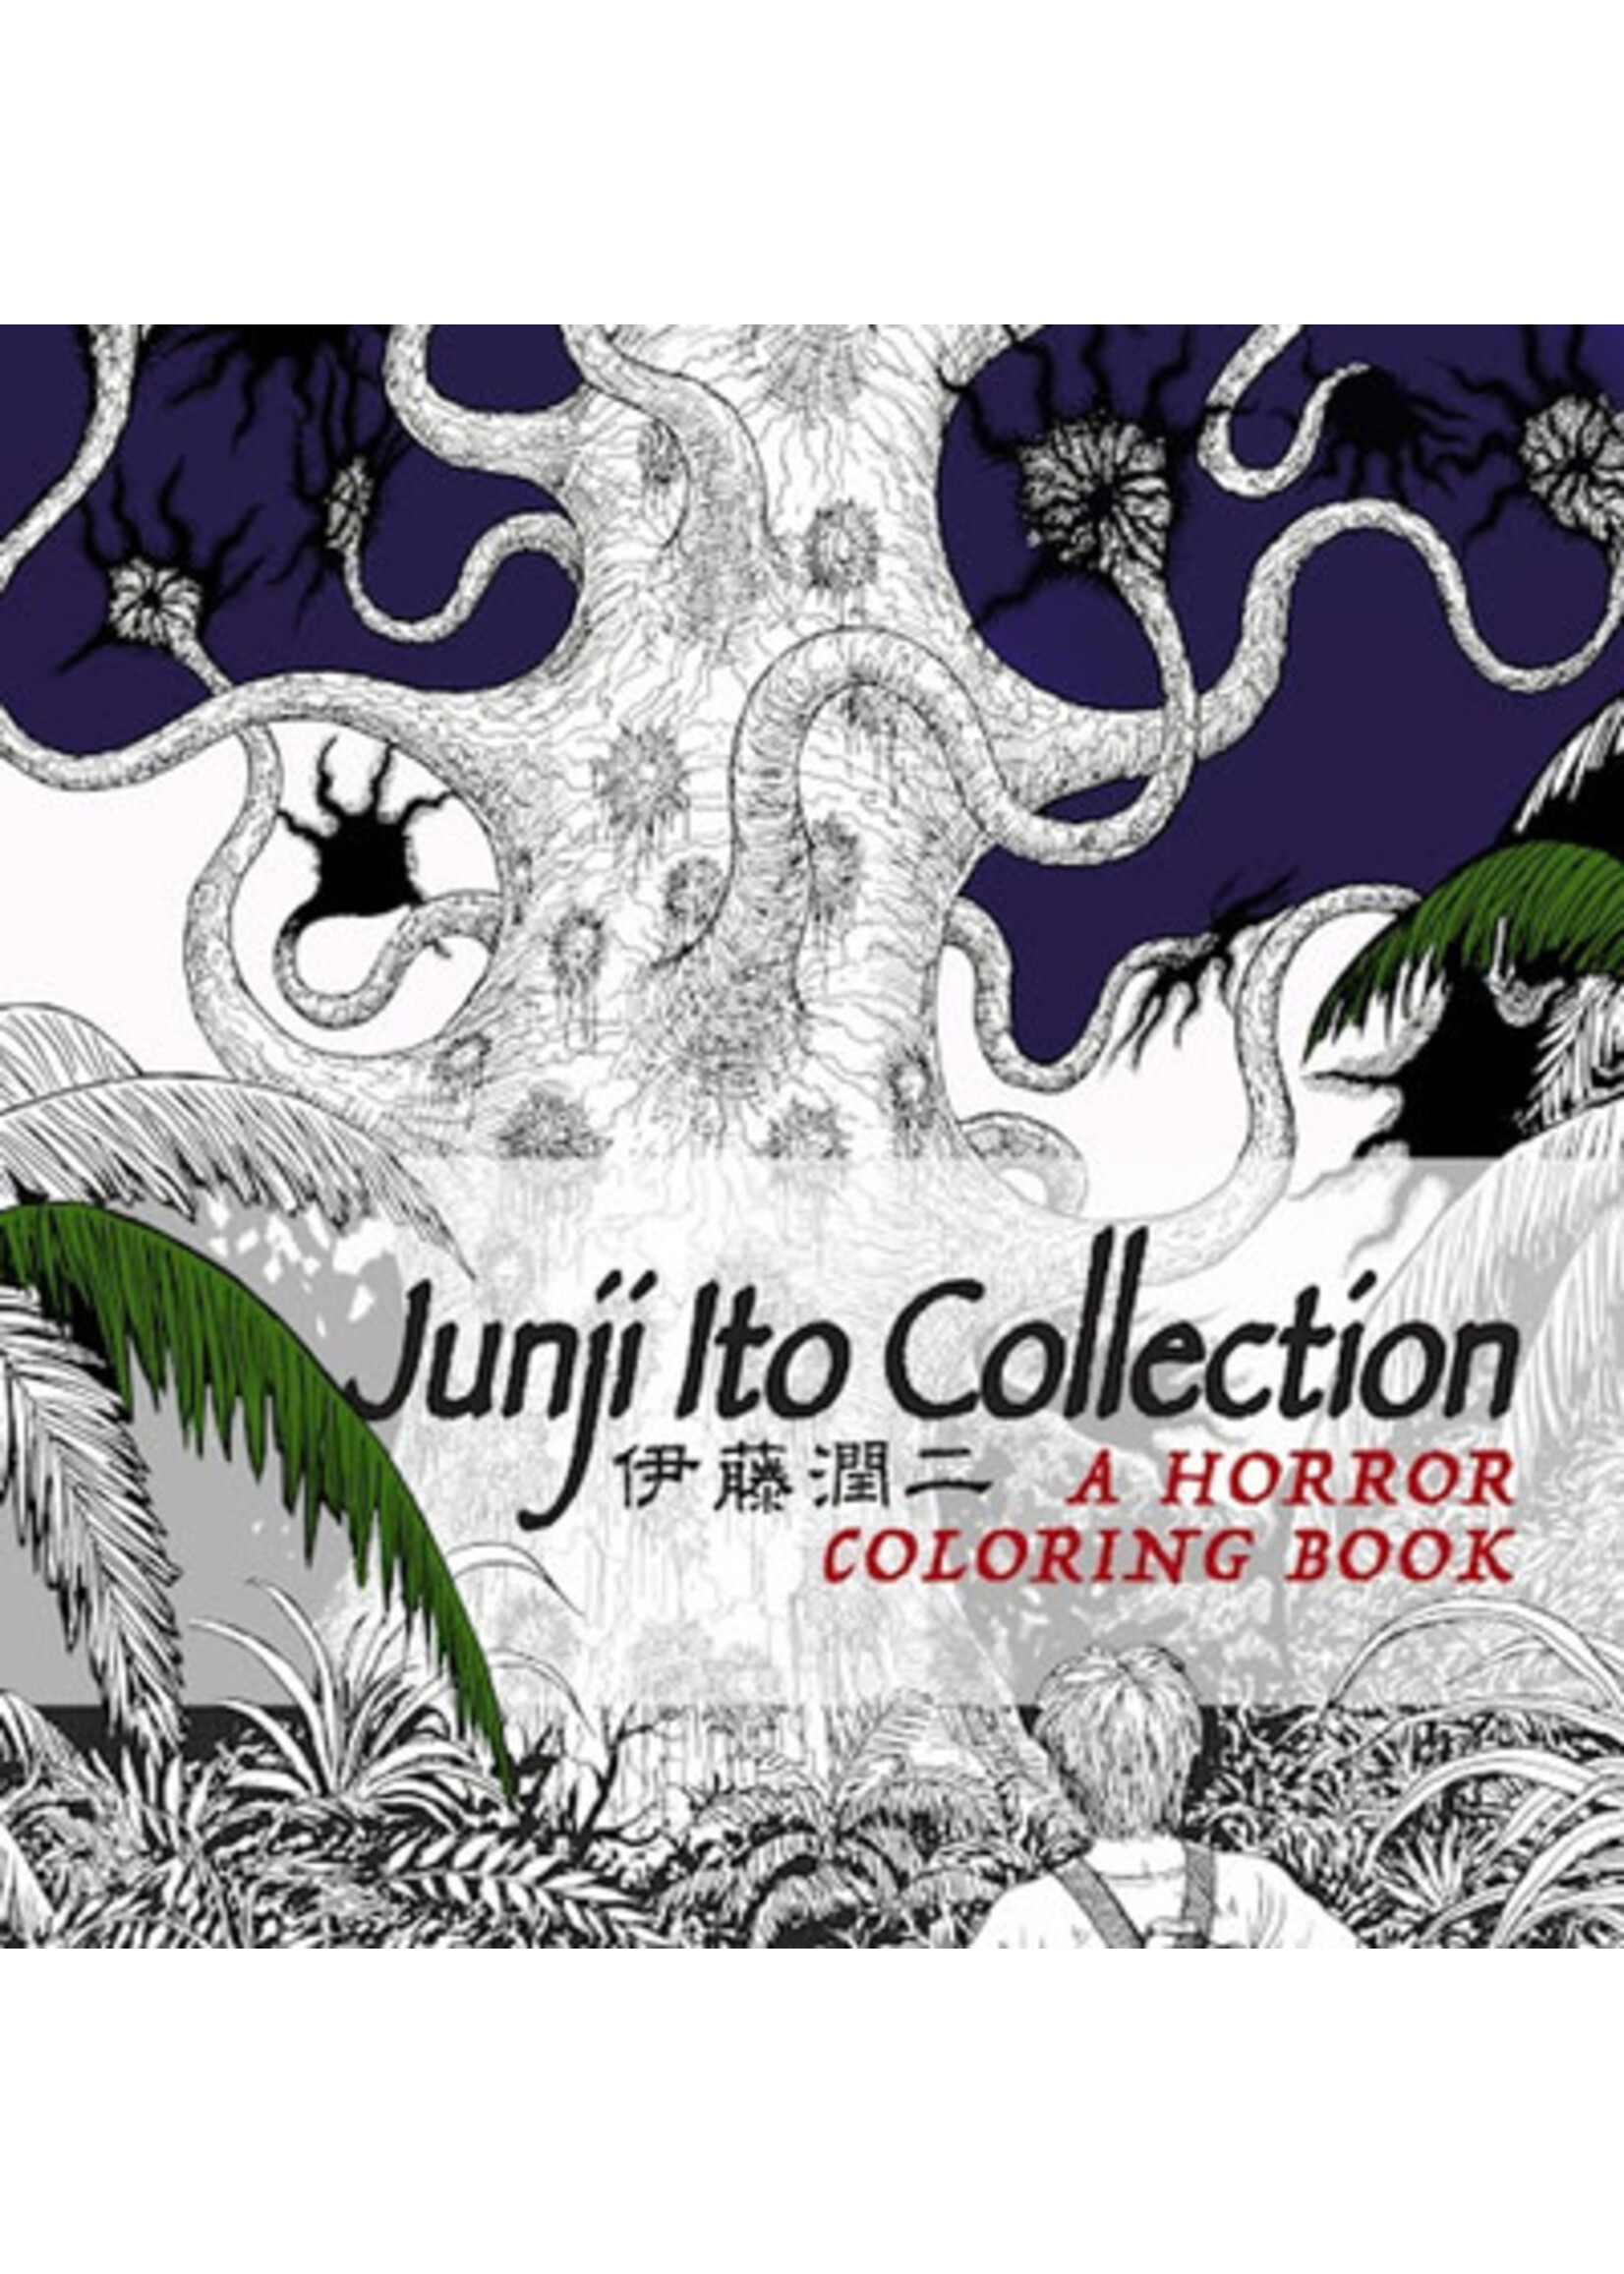 Junji Ito Collection: A Horror Coloring Book by Junji Ito